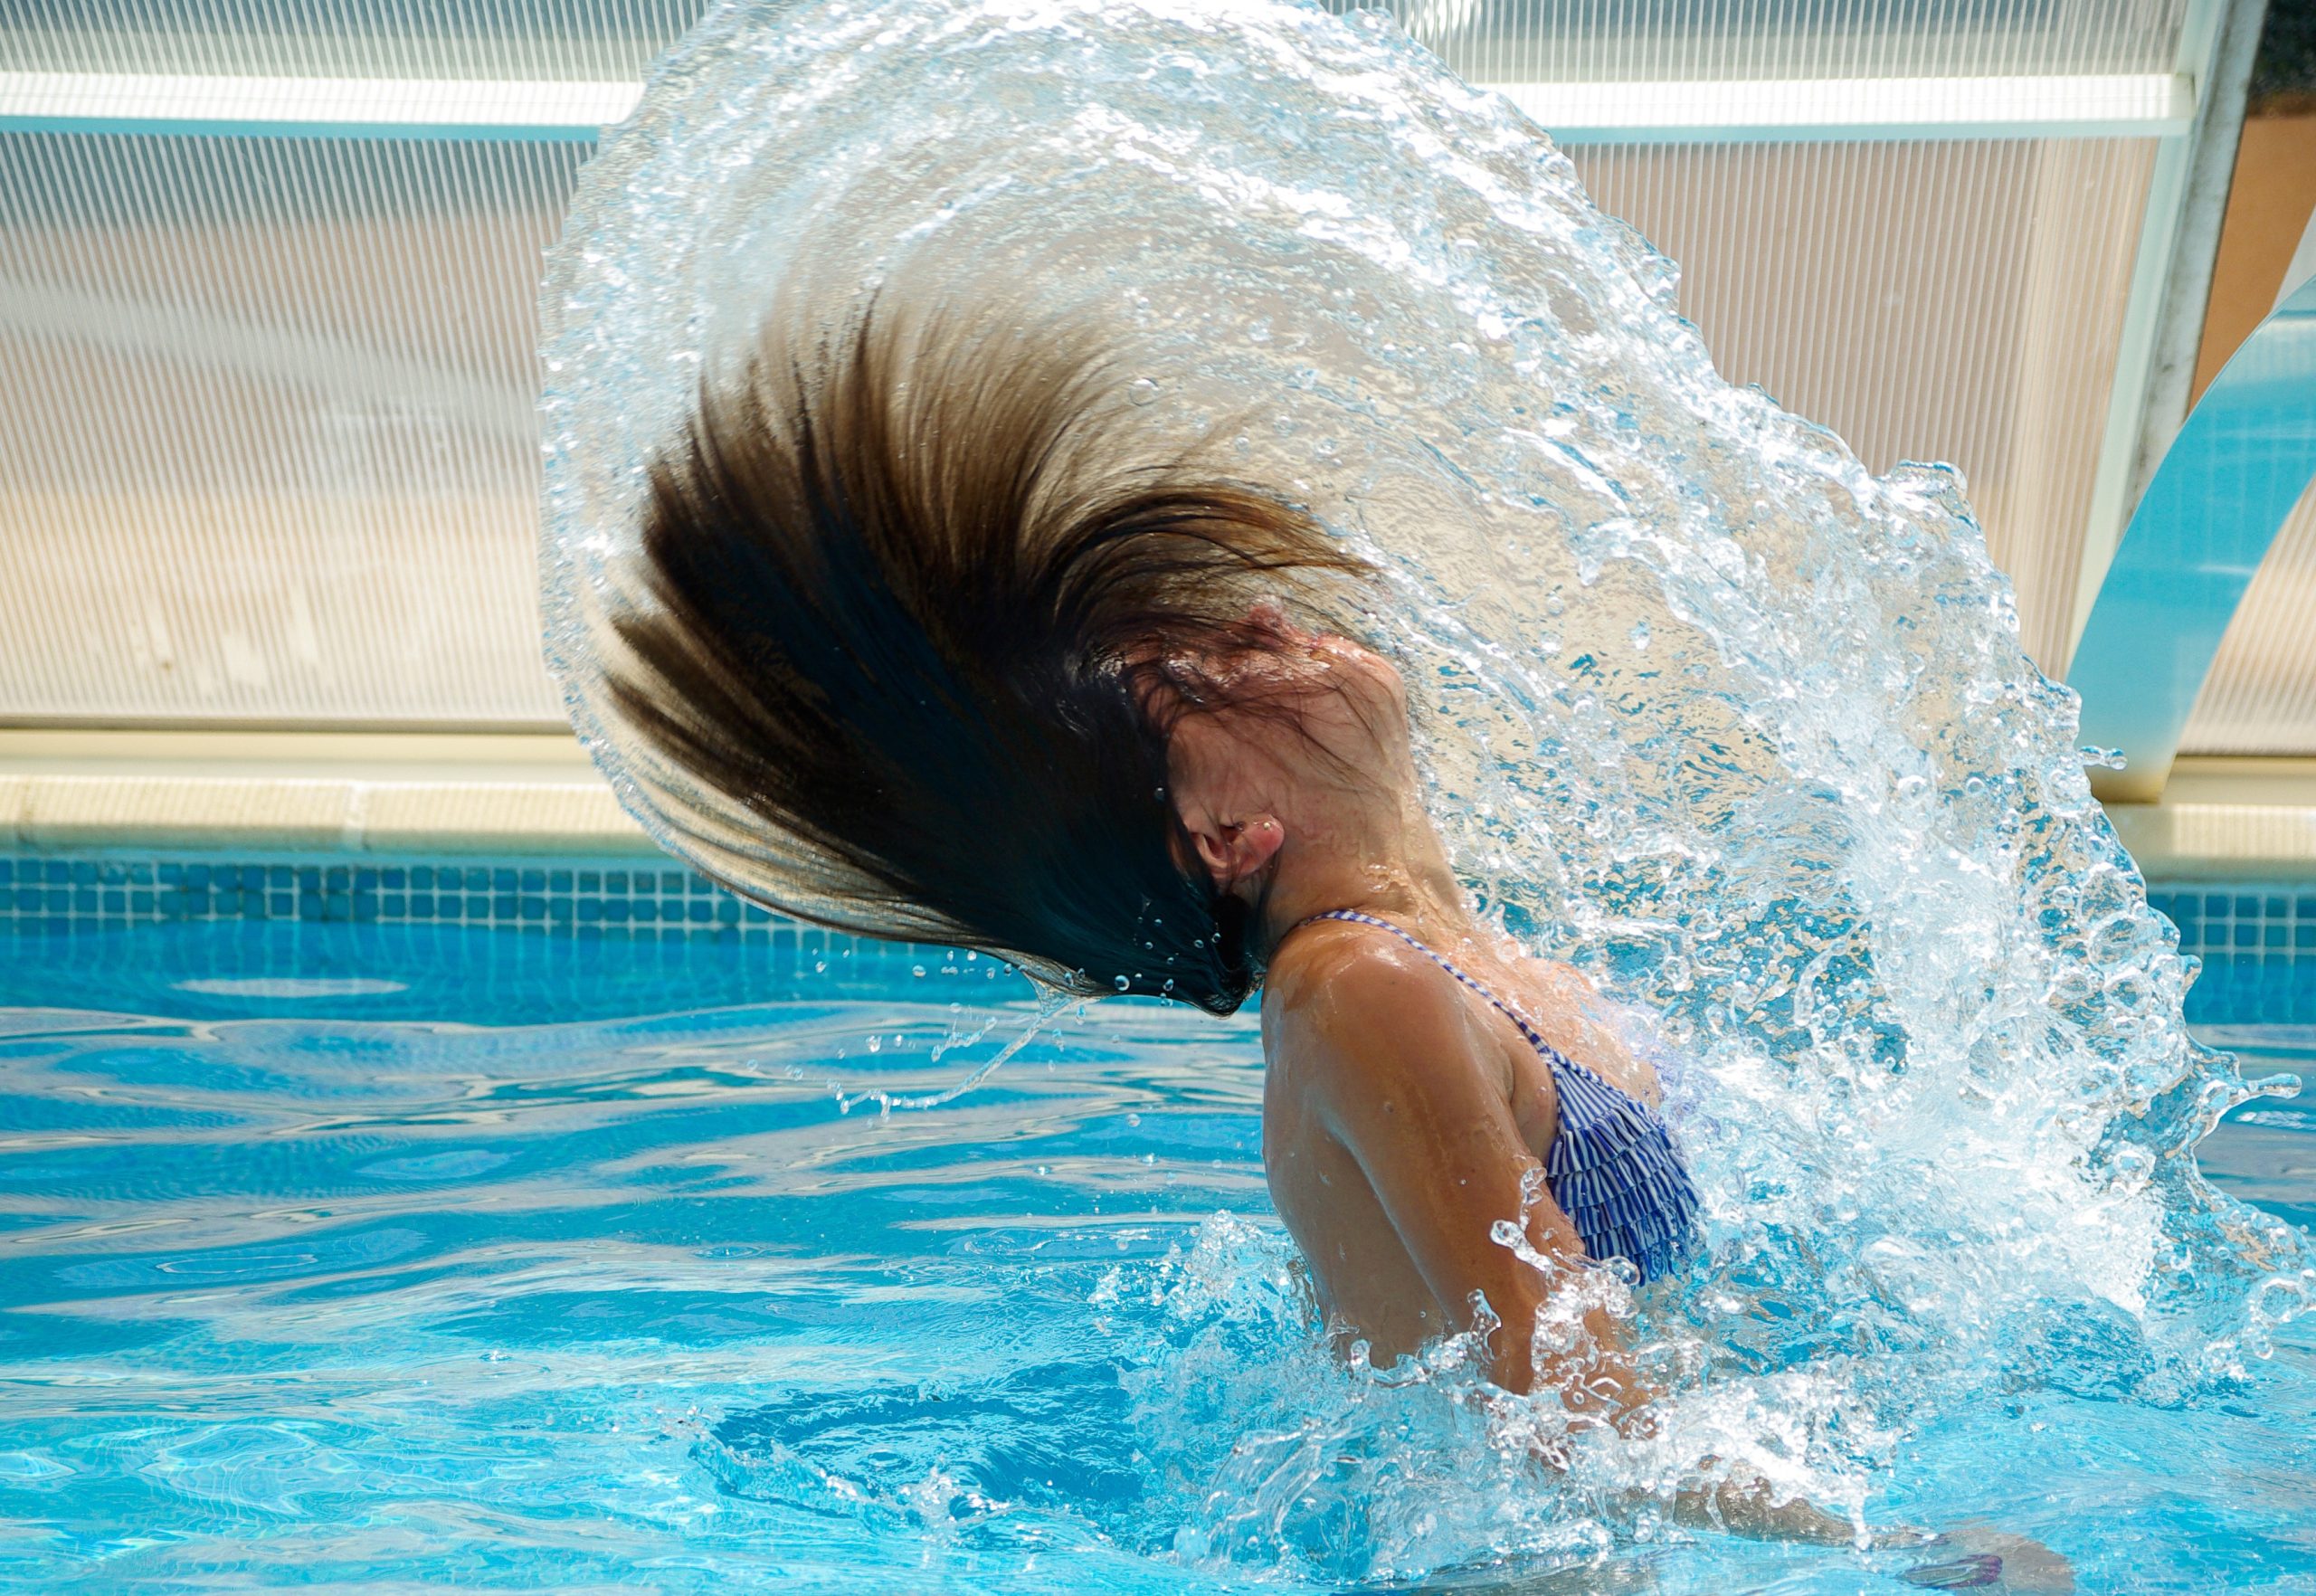 Donna in piscina che muove i capelli nell'acqua.